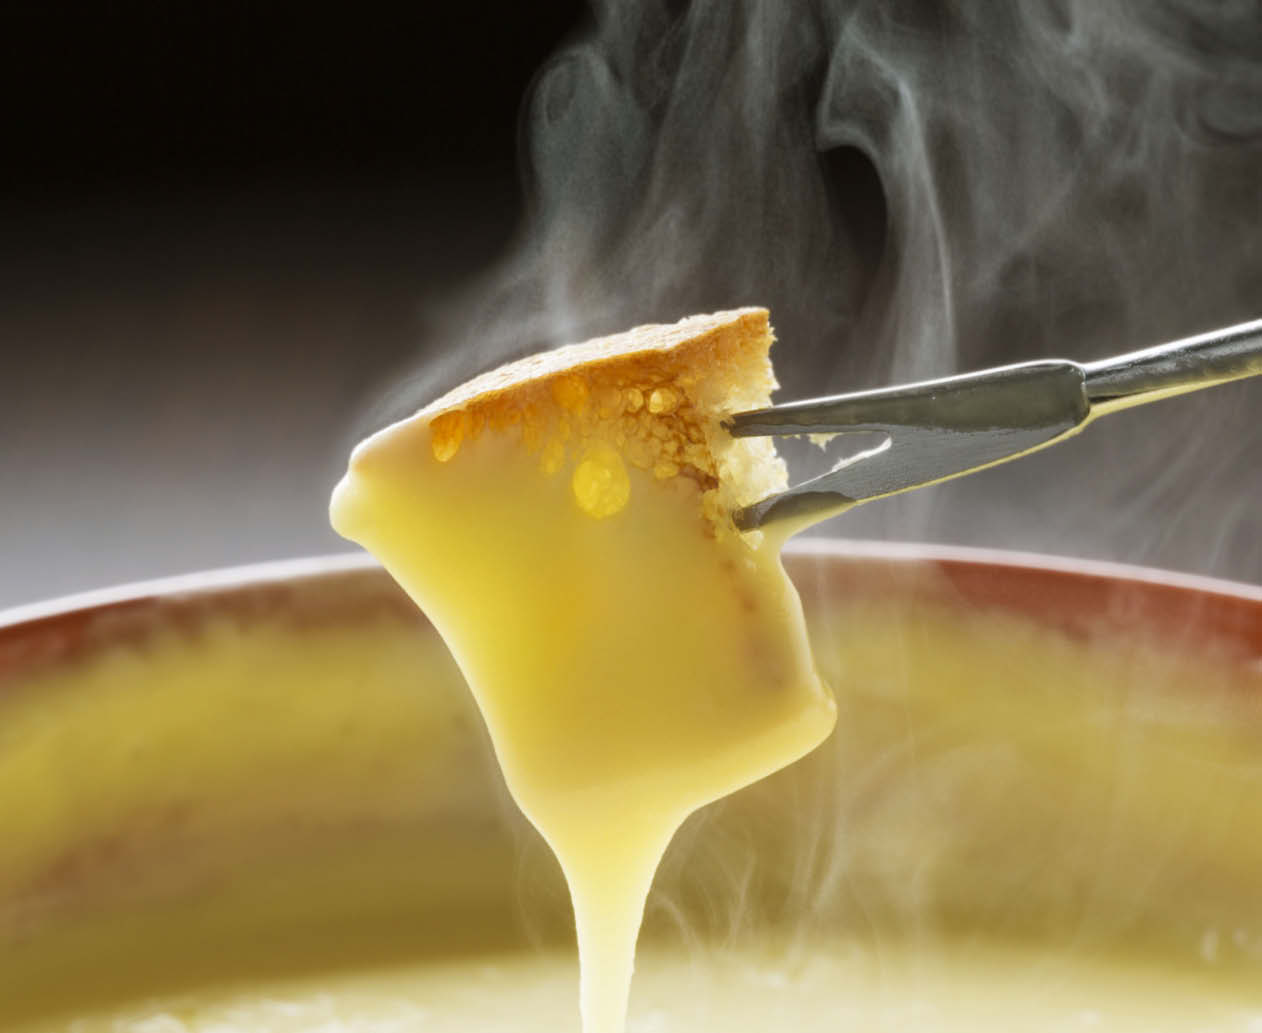 Marktreport b Fondue & Raclette Industrie Melting Pot Das Schmelzen von Käse hat nicht nur uralte Tradition, sondern ist gerade in der kalten Jahreszeit ein überaus beliebter Grund für gemeinsame